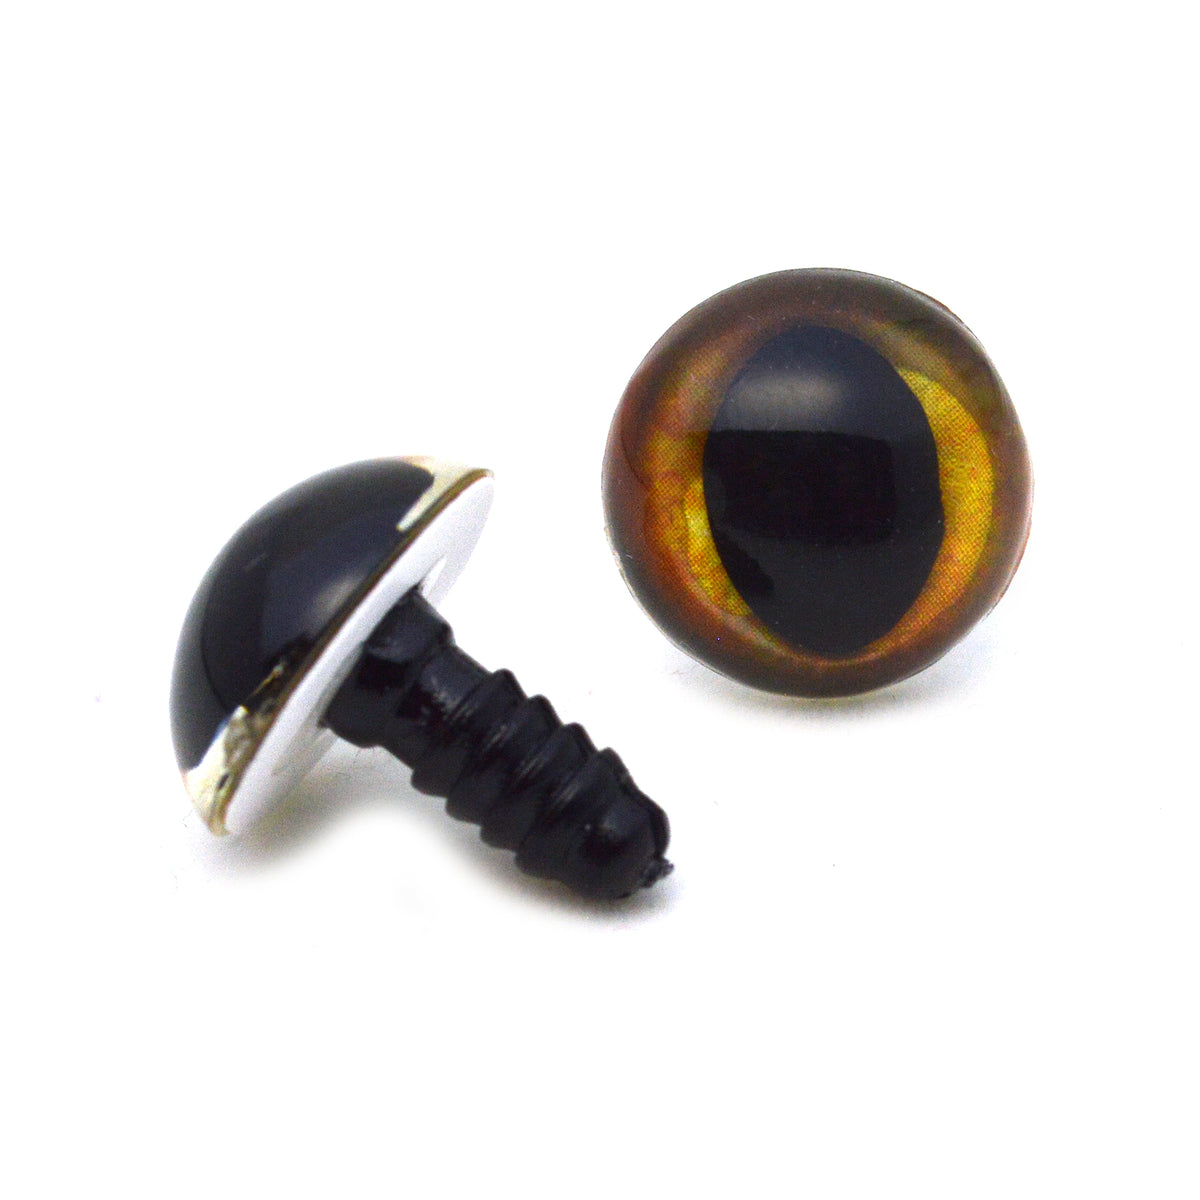 16mm Amber Cat Plastic Safety Eyes – Handmade Glass Eyes